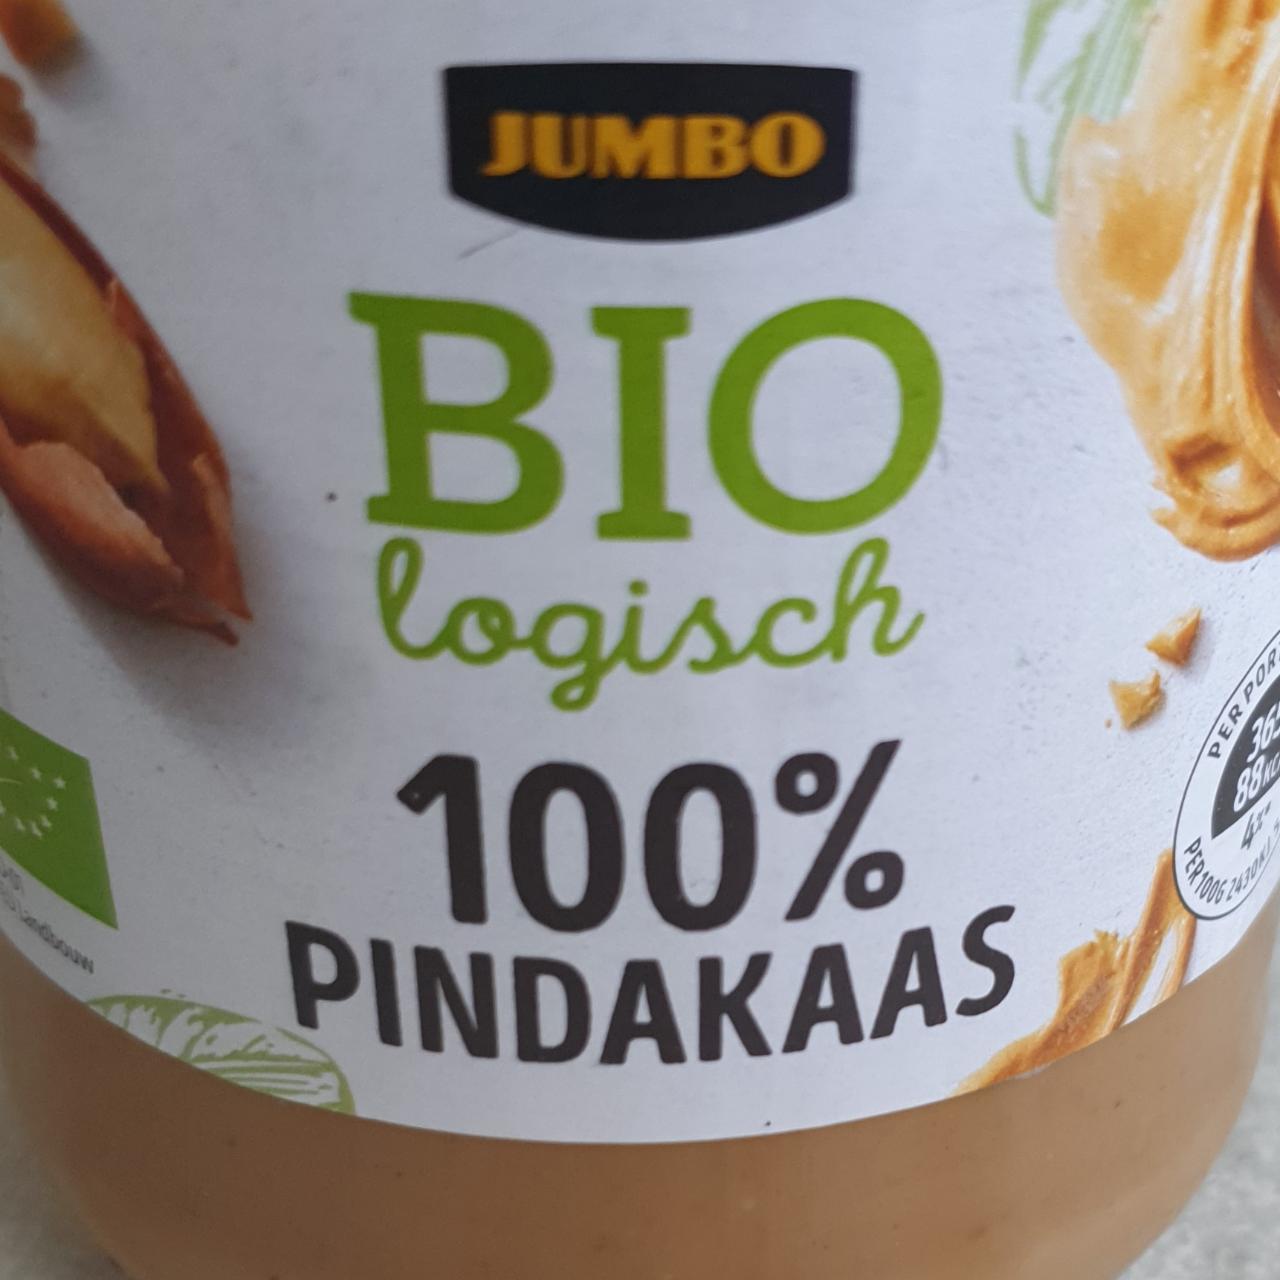 Fotografie - Bio logisch 100% Pindakaas Jumbo